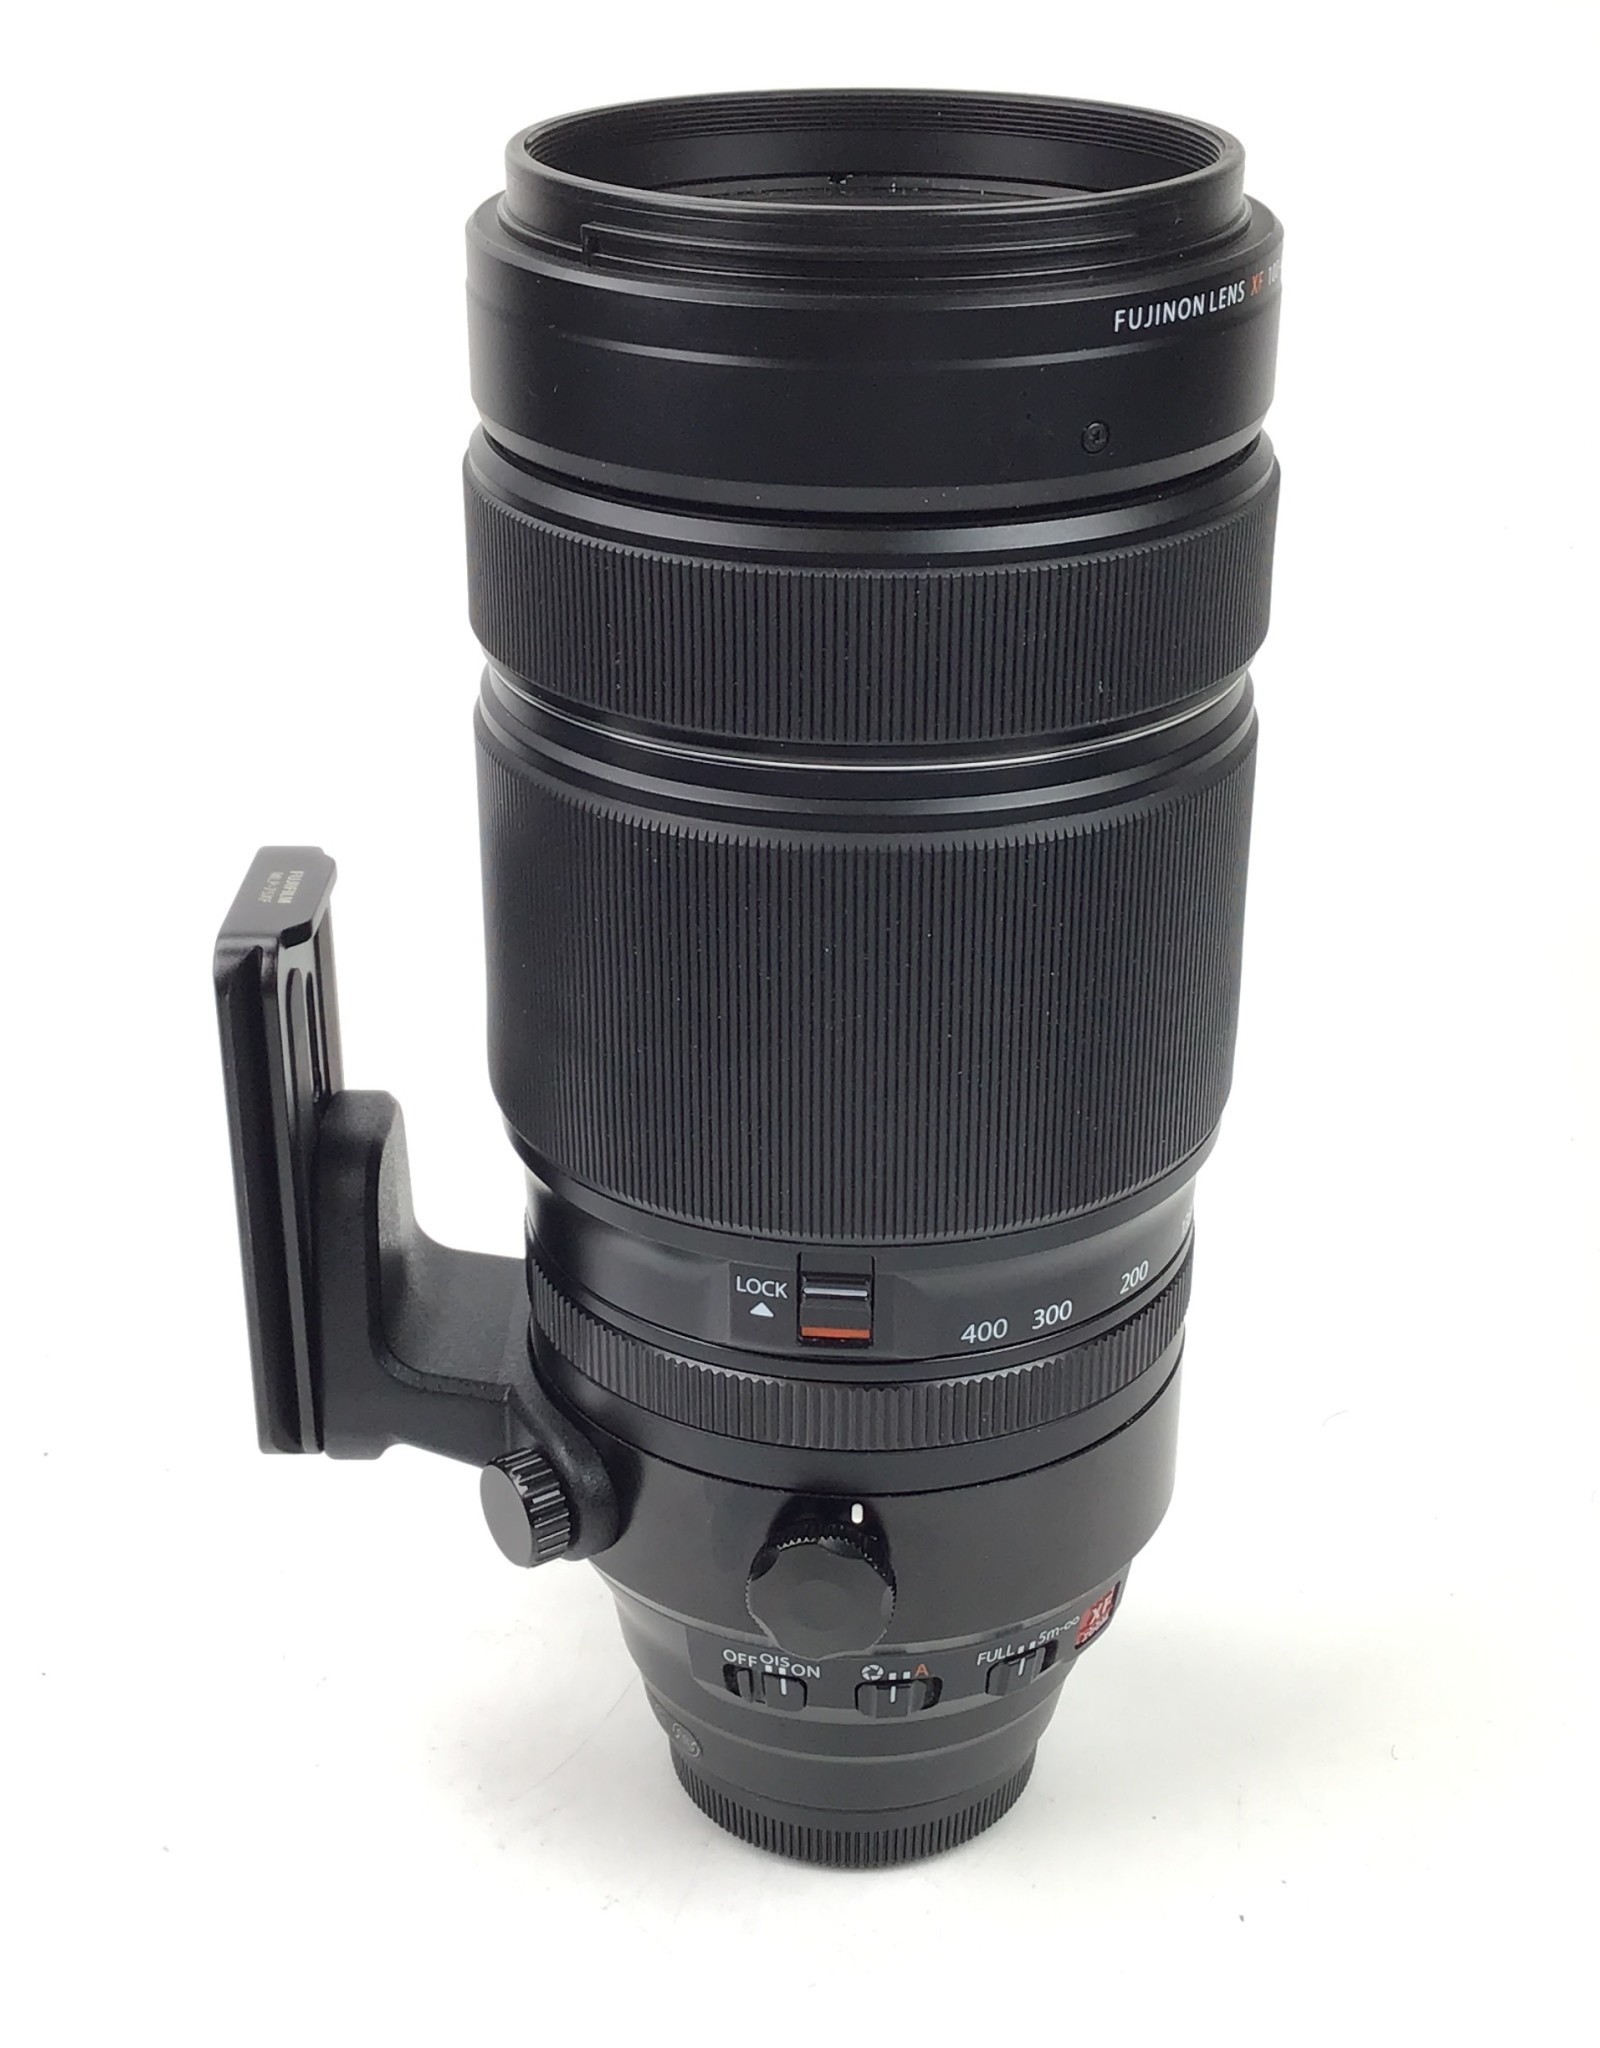 FUJI Fuji XF 100-400mm f4.5-5.6 R LM OIS WR Lens in Box Used EX